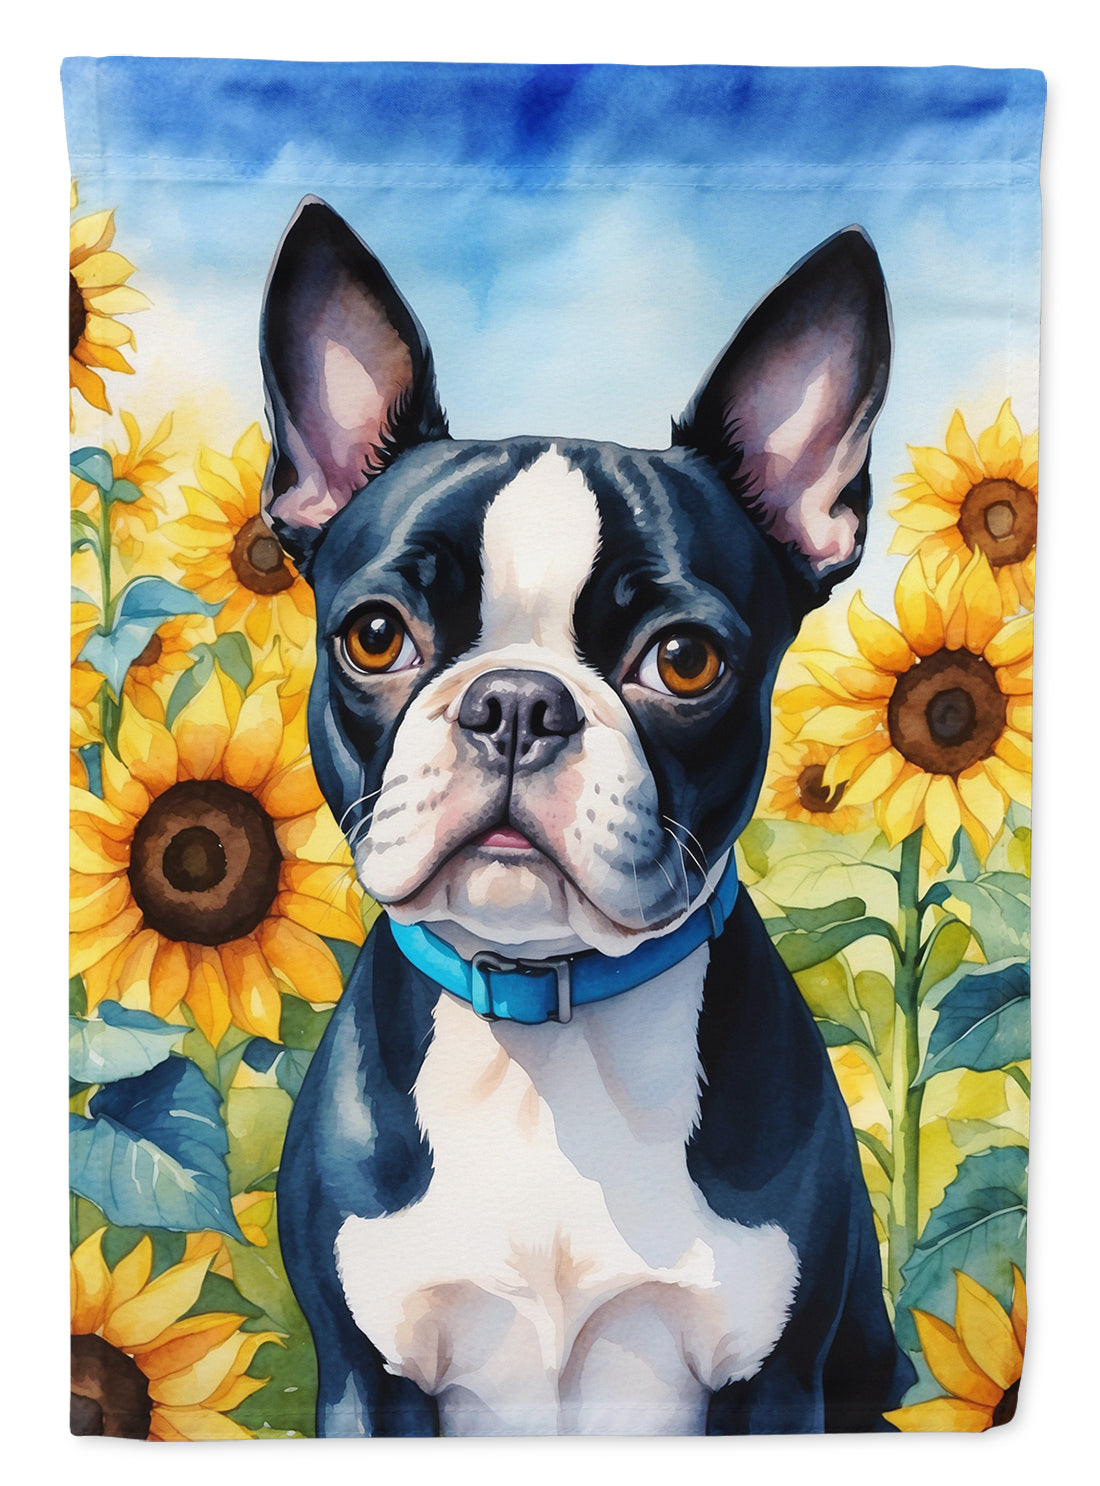 Buy this Boston Terrier in Sunflowers Garden Flag